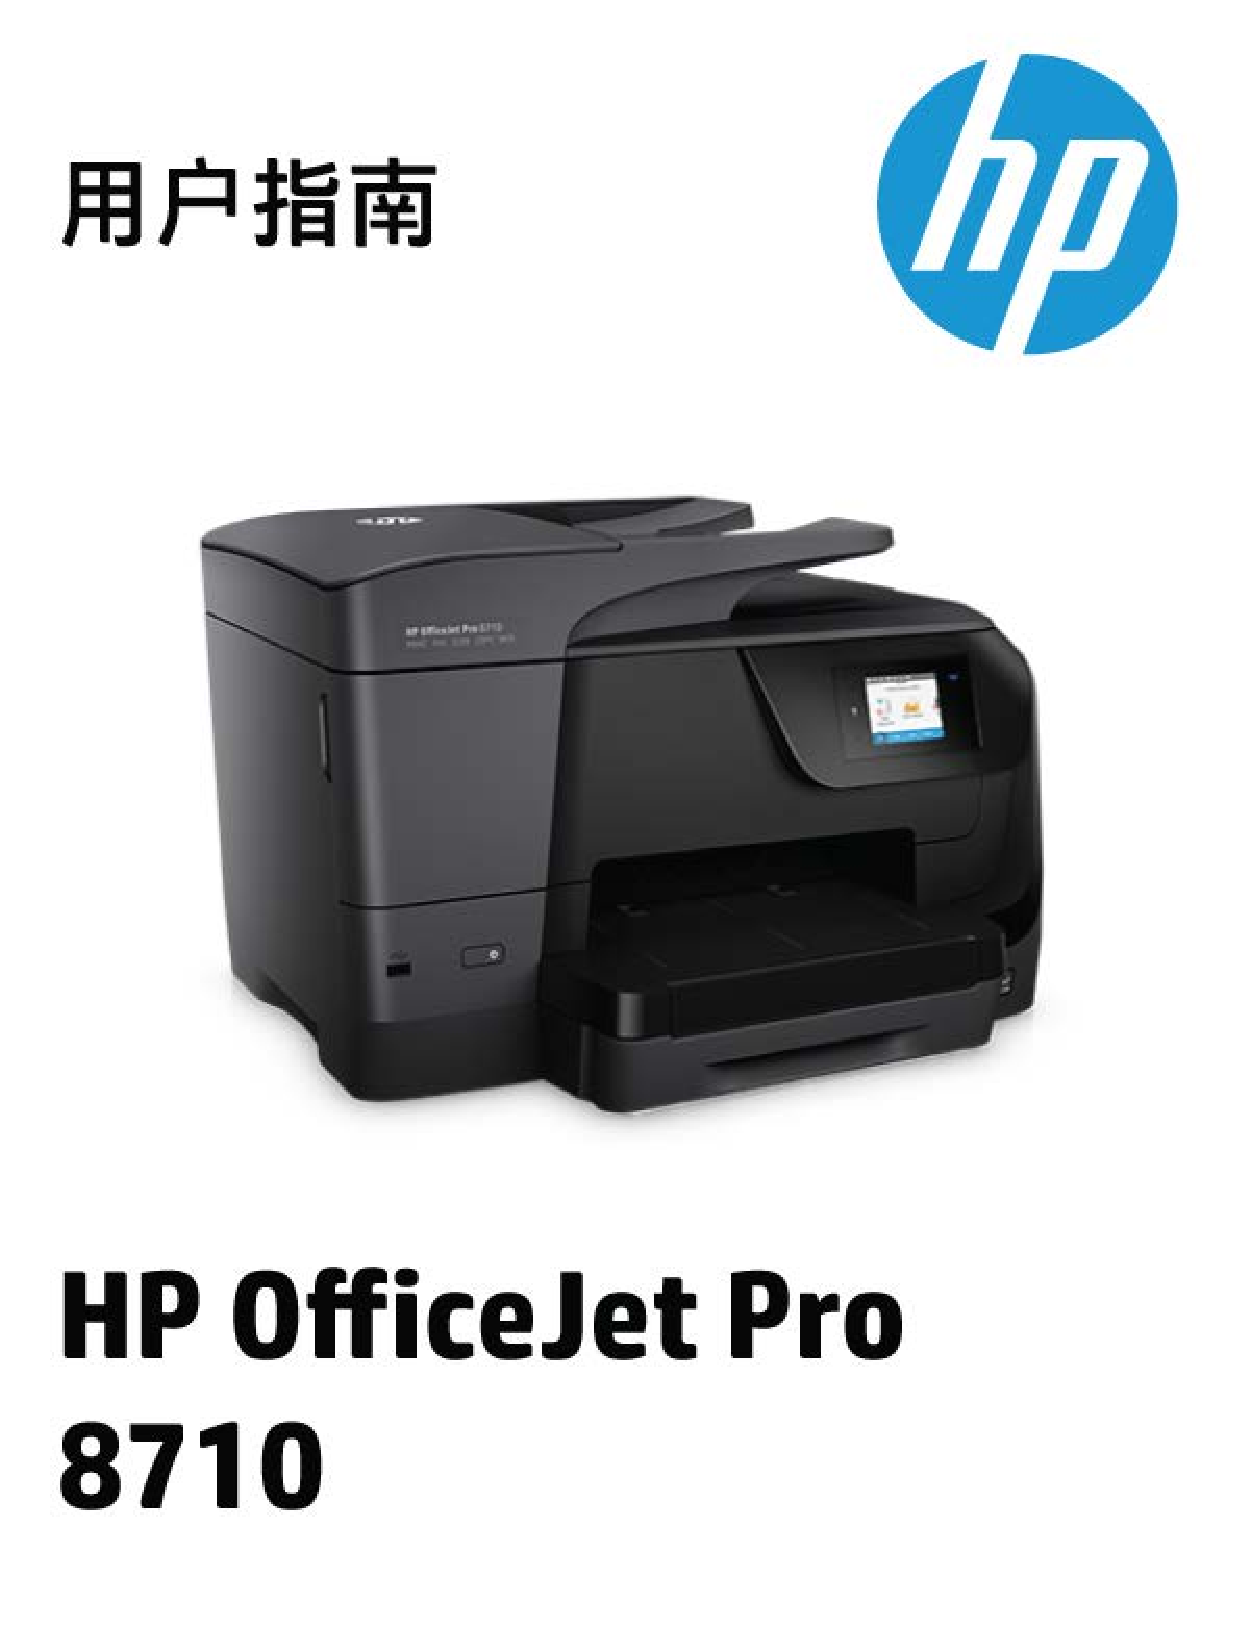 惠普 HP OfficeJet Pro 8710 用户指南 封面